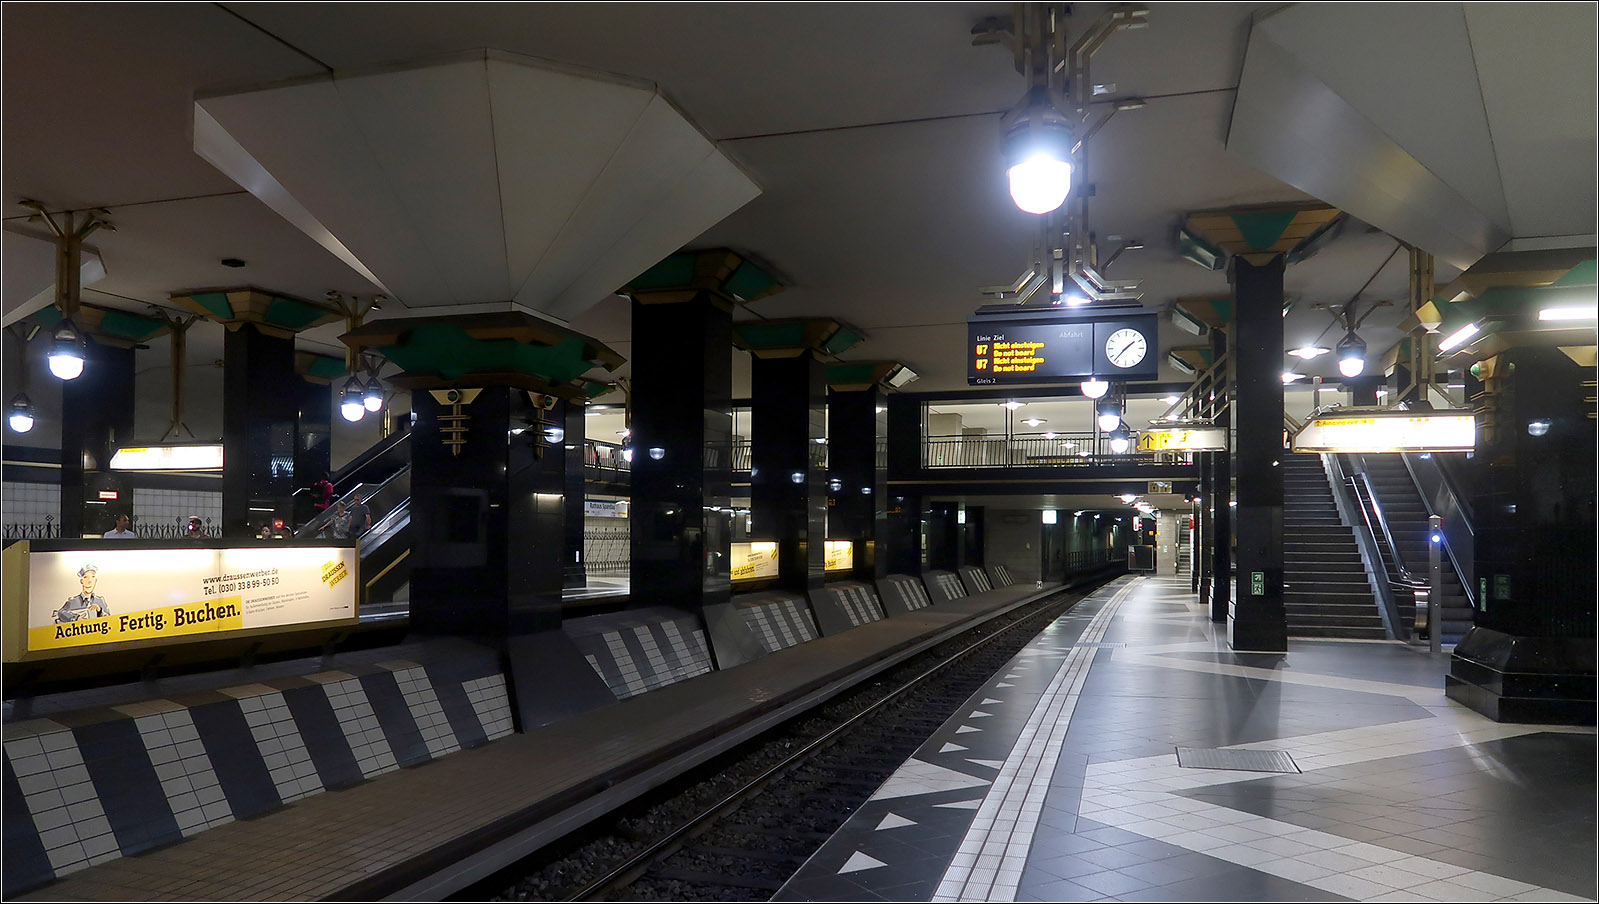 Geheimnisse der Berliner U-Bahn - 

Blick in den für vier Gleise vorbereiteten U-Bahnhof Rathaus Spandau der Linie U7 (und vielleicht fährt hier auch mal die U2). Der in ca. 8,5 Meter Tiefe liegende recht breite Bahnhof wurde in Deckelbauweise erreichtet. Wobei zuerst die Wände und Decke gebaut und dann darunter das Erdreich abgetragen wird. So kann die Oberfläche rechts schnell wieder über der Baustelle genutzt werden. Der Ausbau wurde sehr detailreich und aufwändig ausgeführt, ein Stil der mir aber etwas überzogen wirkt.
Südlich der Station schließt sich eine fast 600 Meter lange Abstellanlage an, die längste im Berliner U-Bahnnnetz.

14.07.2023 (M)